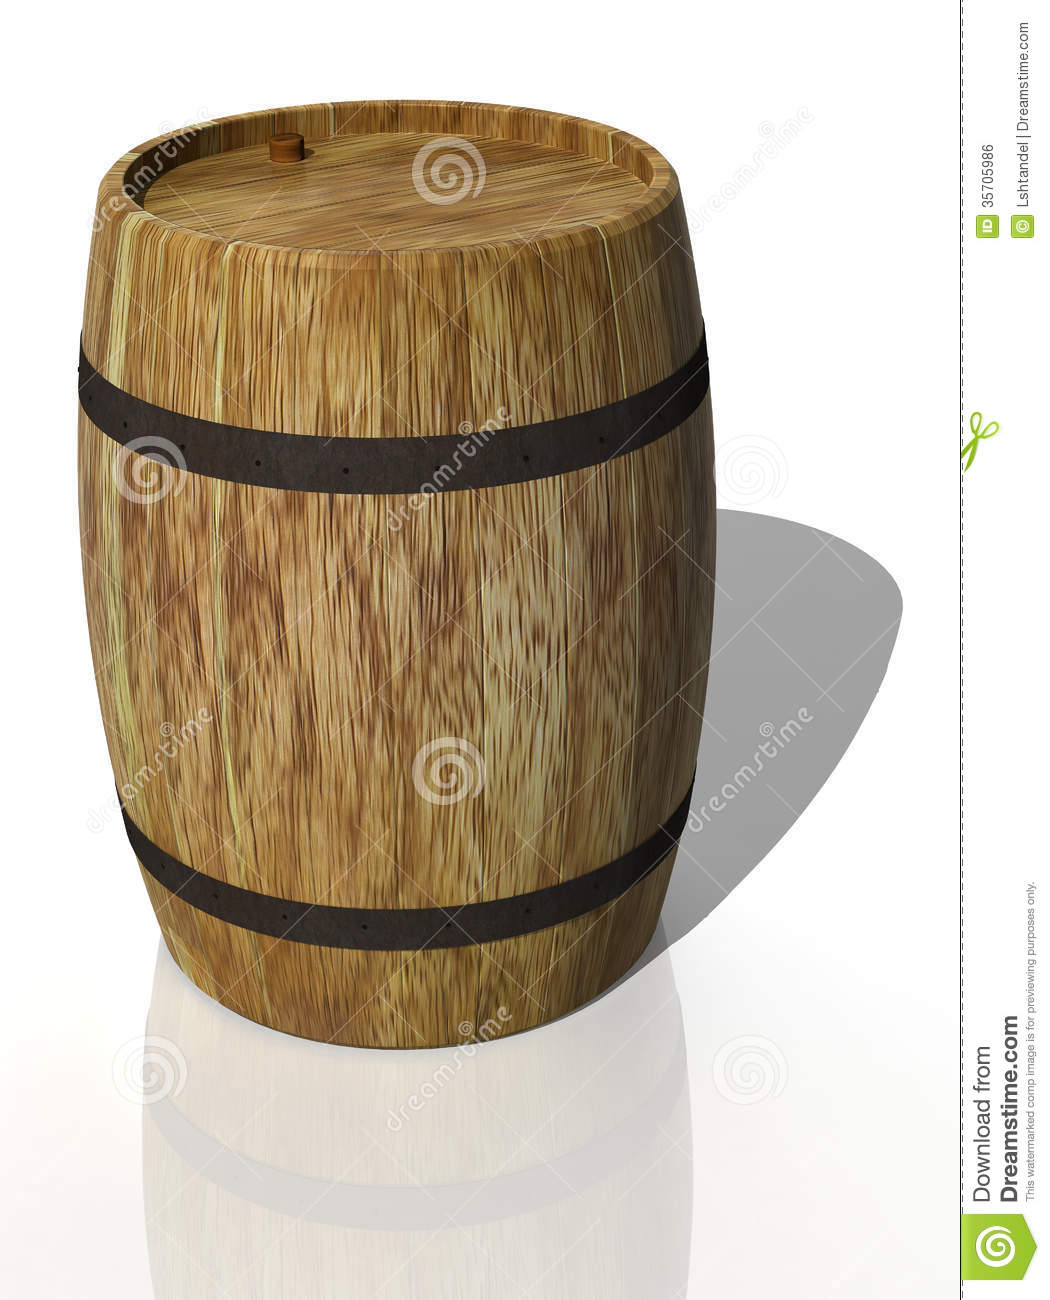 Wooden Oak Barrel  3d Render Royalty Free Stock Image   Image    